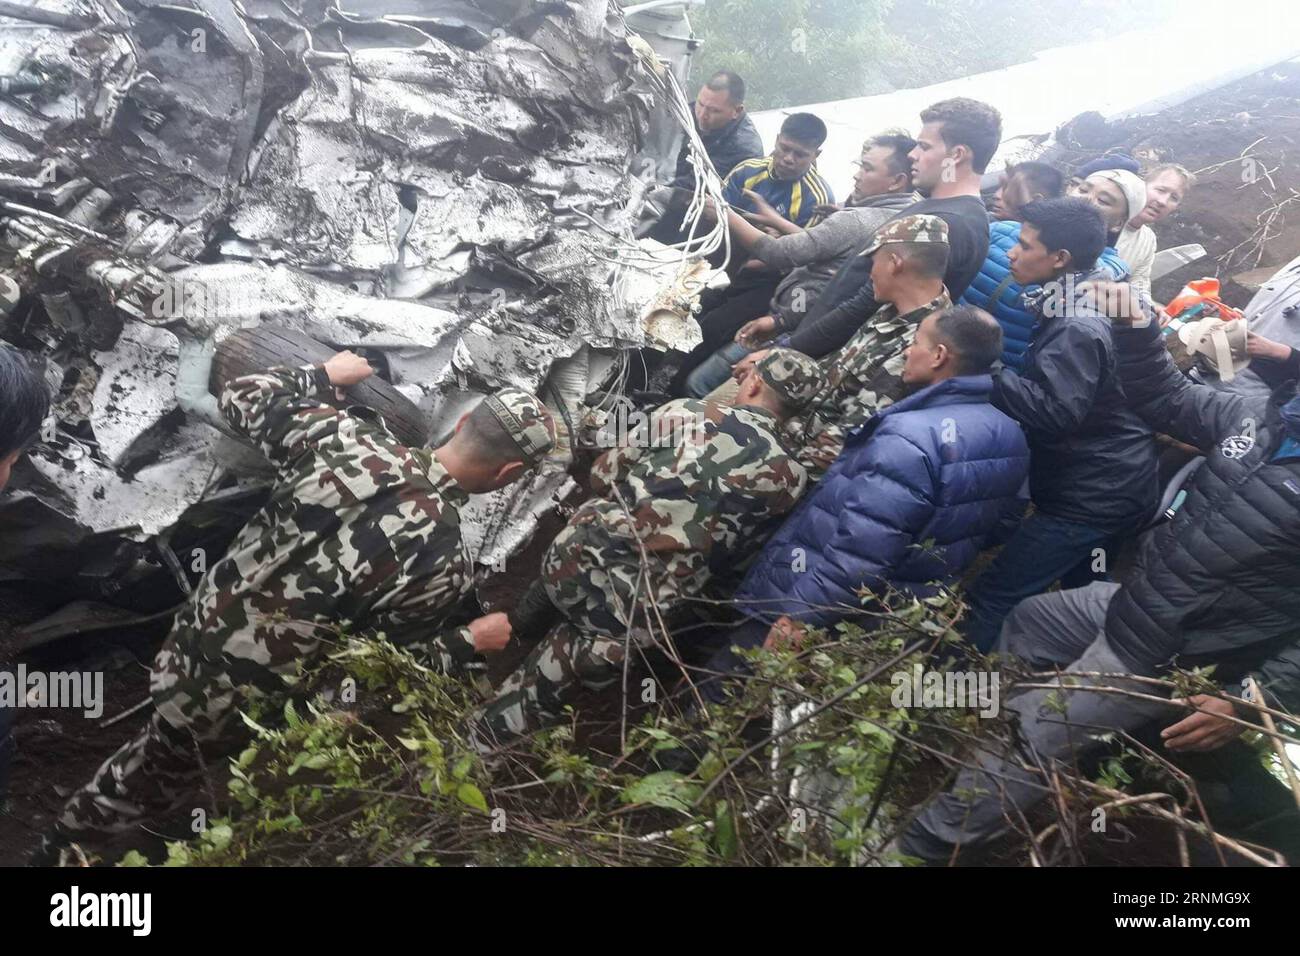 (170528) -- SOLUKHUMBU (NEPAL), 28 maggio 2017 -- la foto scattata il 27 maggio 2017 mostra una scena di operazioni di salvataggio nel sito dell'incidente di un aereo cargo vicino all'aeroporto Tenzing Hillary di Lukla, vicino al Monte Qomolangma, situato nel distretto orientale di Solukhumbu, Nepal. Un pilota è morto e due membri dell'equipaggio sono rimasti feriti dopo che un aereo cargo della Goma Airlines si è schiantato durante l'atterraggio all'aeroporto Tenzing Hillary di Lukla vicino al Monte Qomolangma sabato pomeriggio, le autorità hanno confermato. L'aereo 9N-AKY si è schiantato mentre stava cercando di atterrare all'aeroporto, che è spesso considerato l'aeroporto più pericoloso del Foto Stock